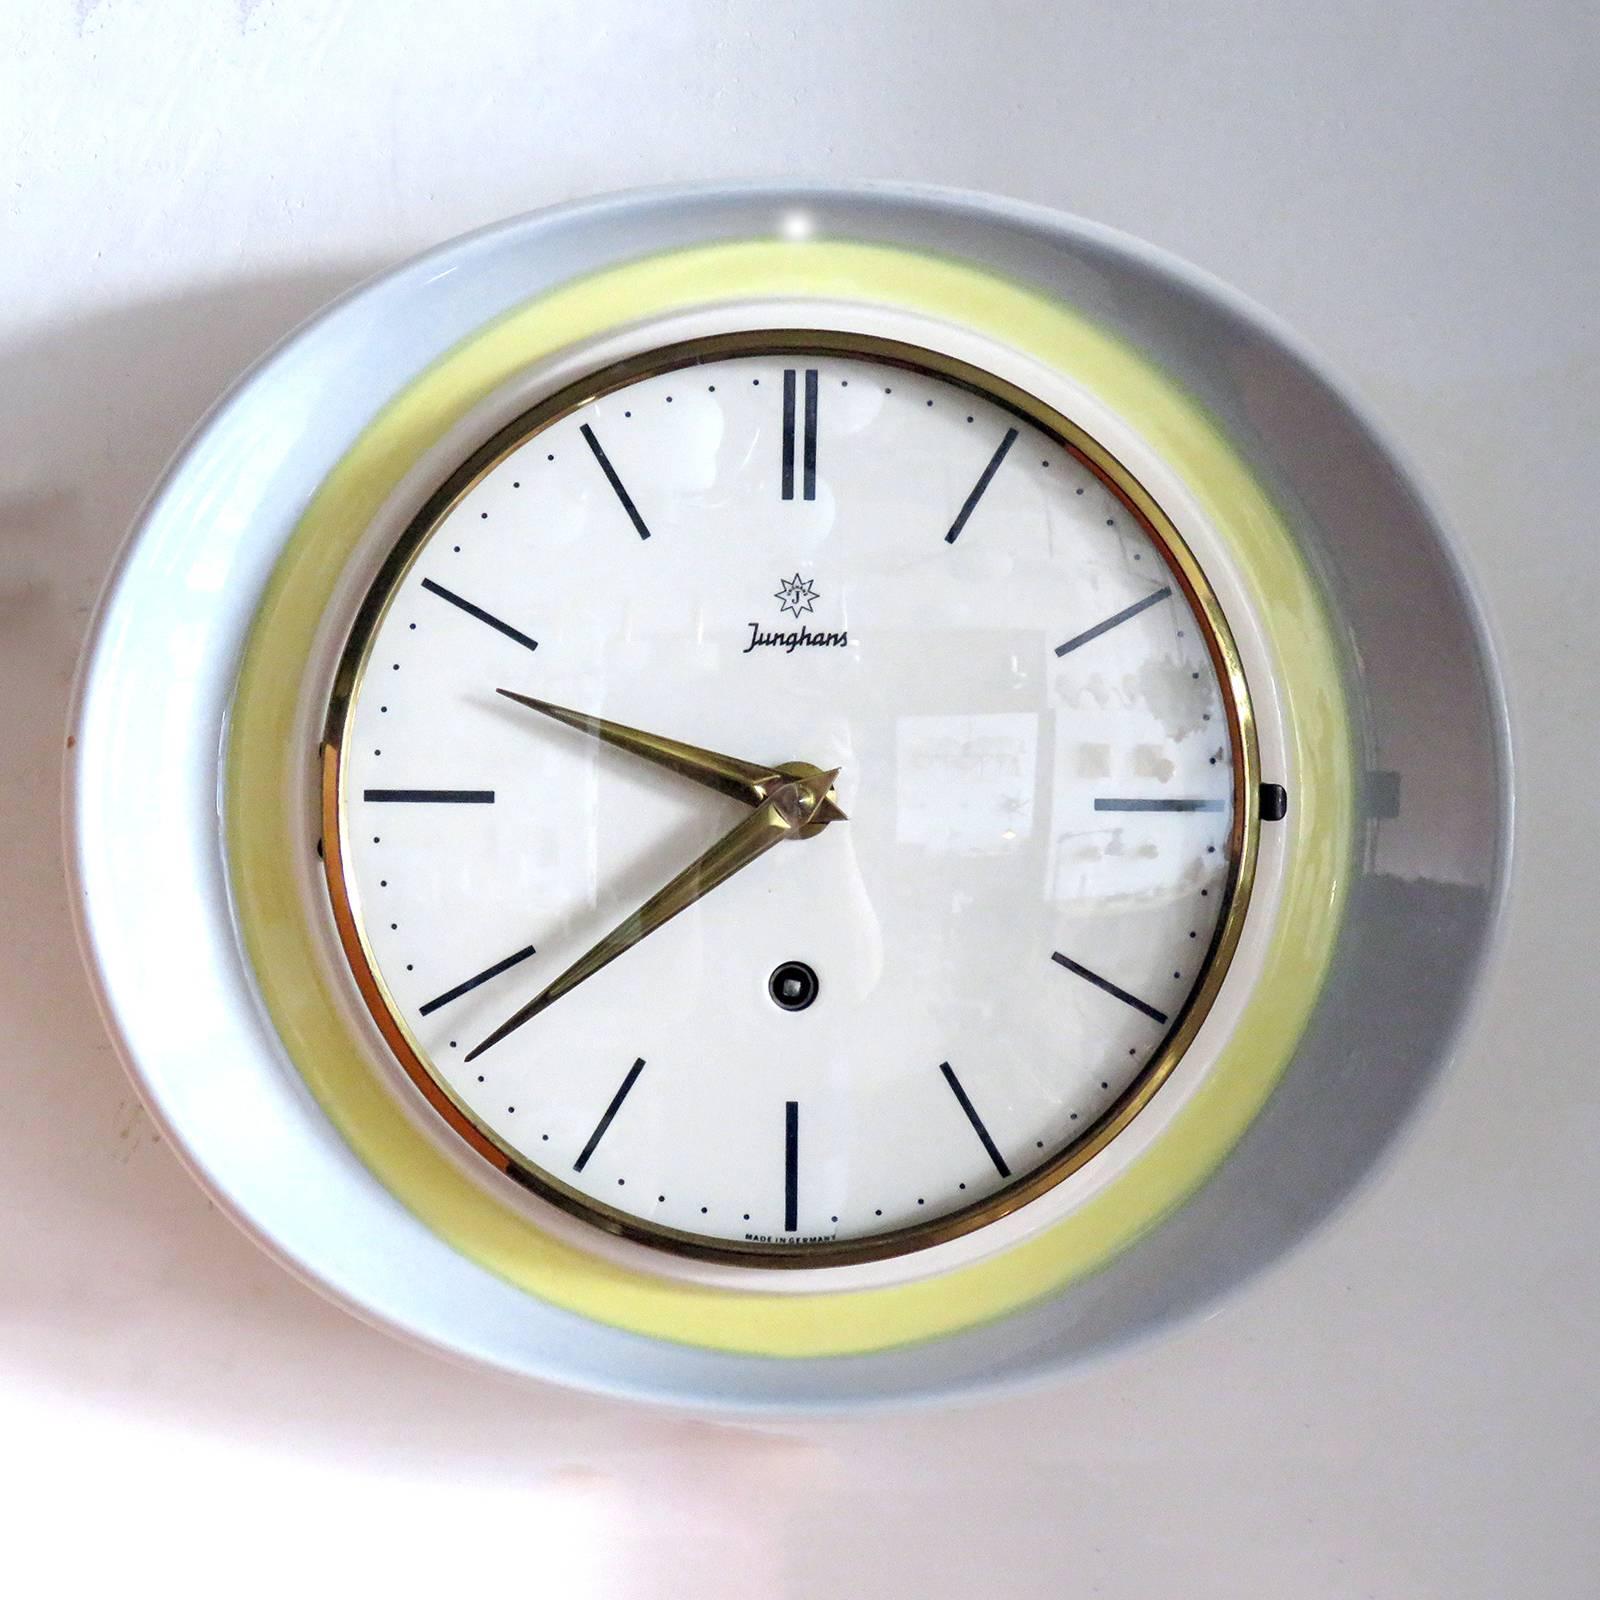 Rare horloge murale ovale en céramique, attribuée à Max Billing pour Junghans Allemagne dans les années 1950, avec un boîtier en céramique à deux tons, alimentée par un mécanisme mécanique à remontage manuel, 3sec/24h, clé présente, marquée.